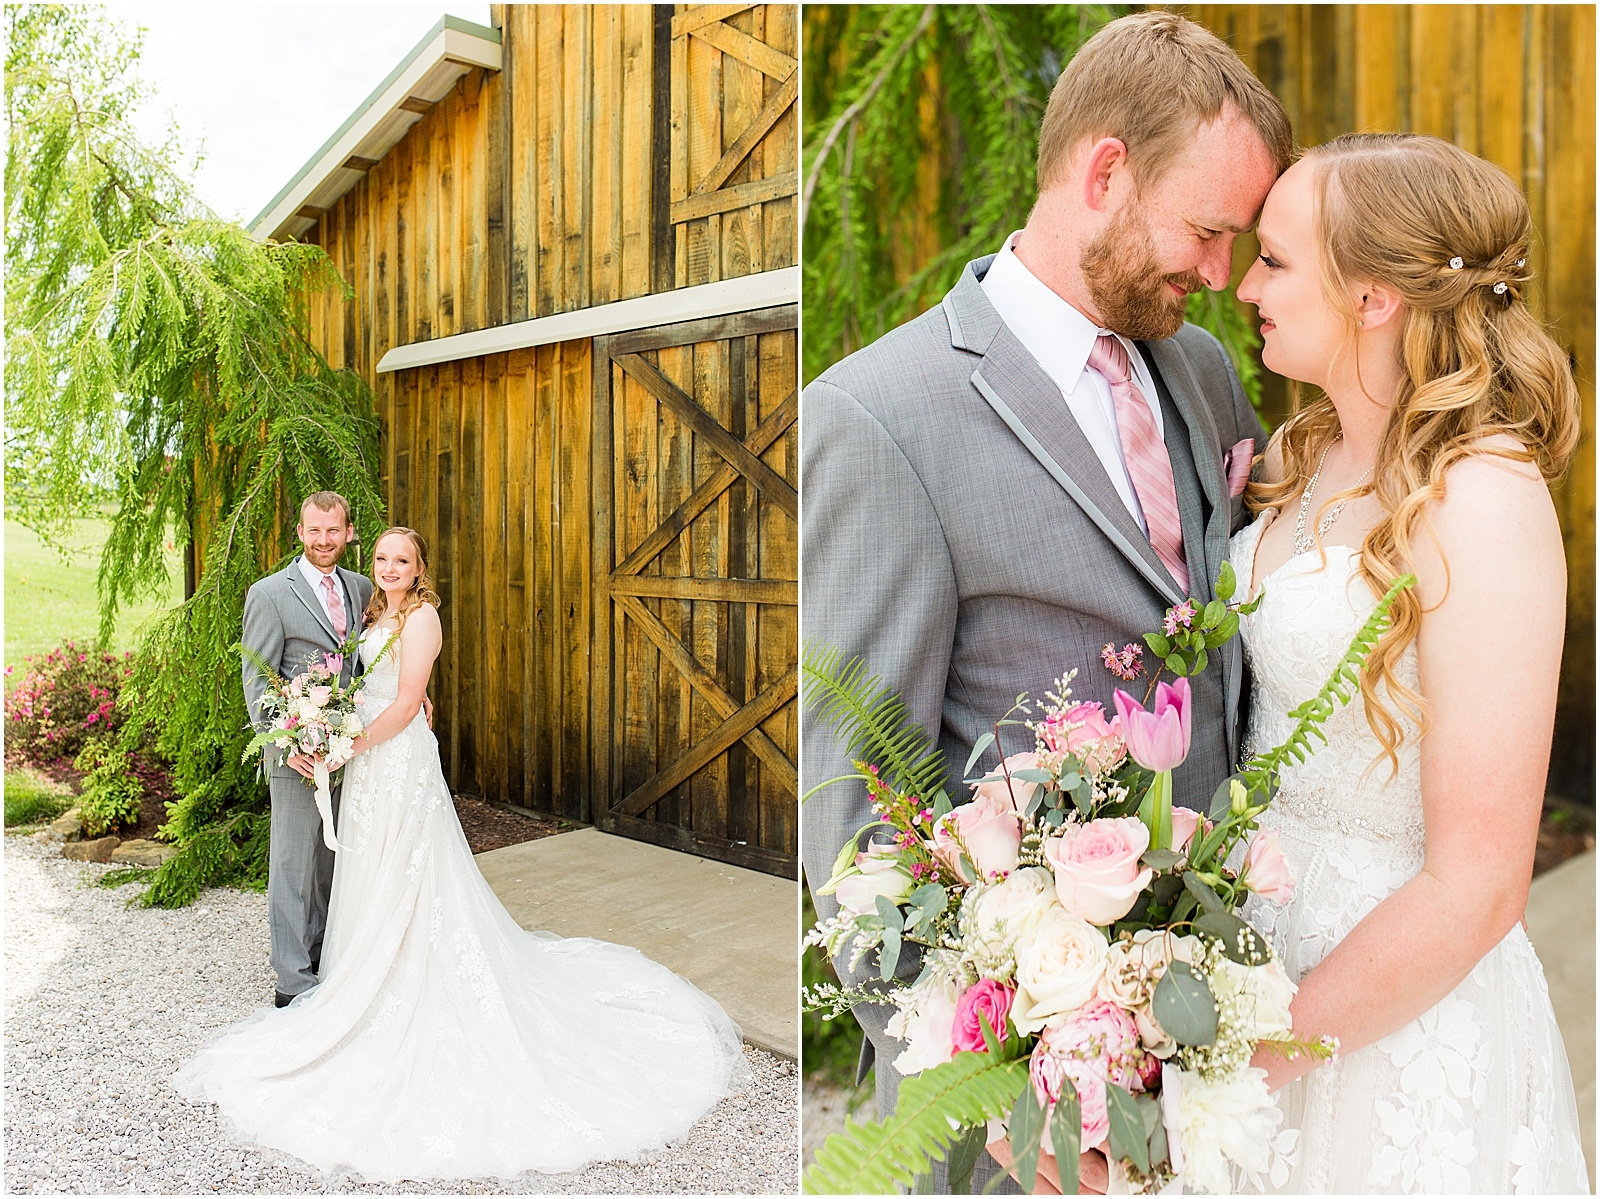 Sierra and Eddie | Wedding BlogBret and Brandie Blog | @bretandbrandie-0057.jpg